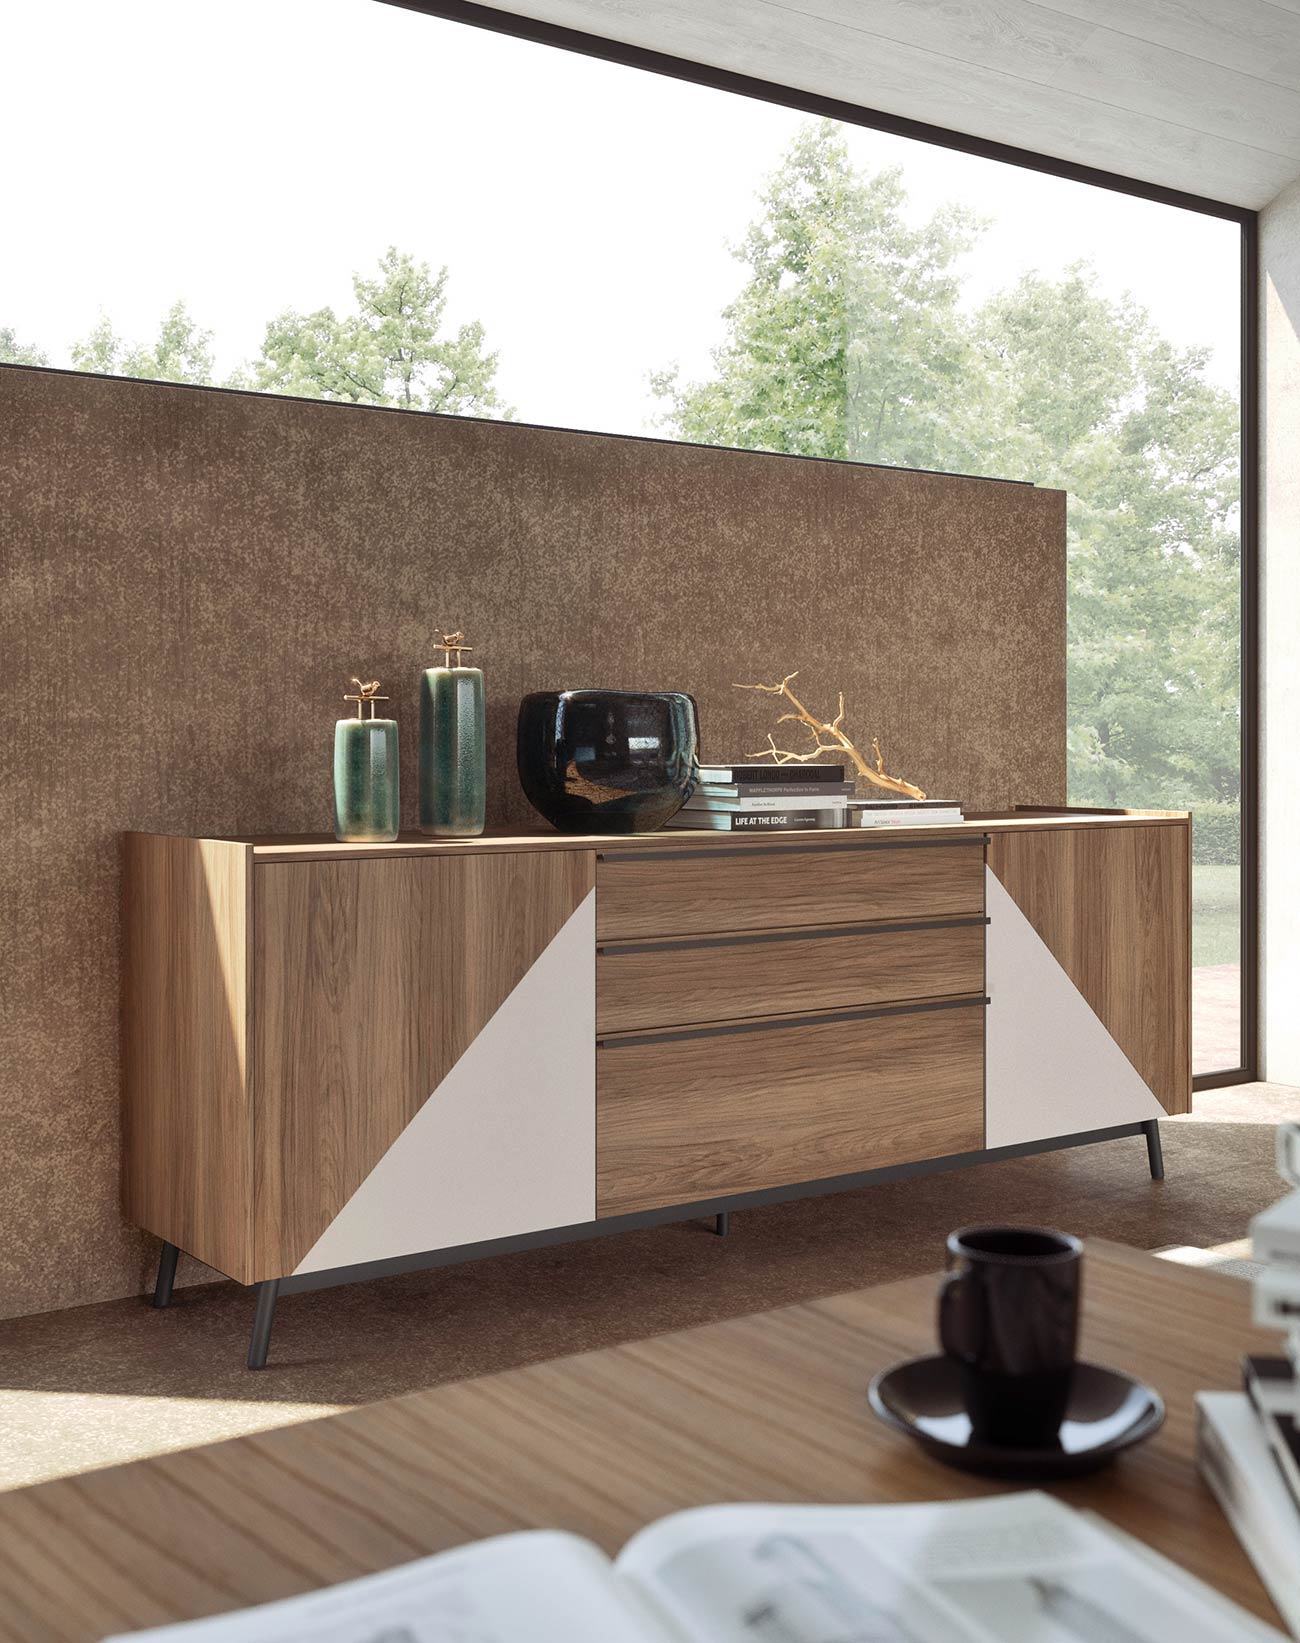 Madia Glamour Per Un Soggiorno Di Design Mab Home Furniture